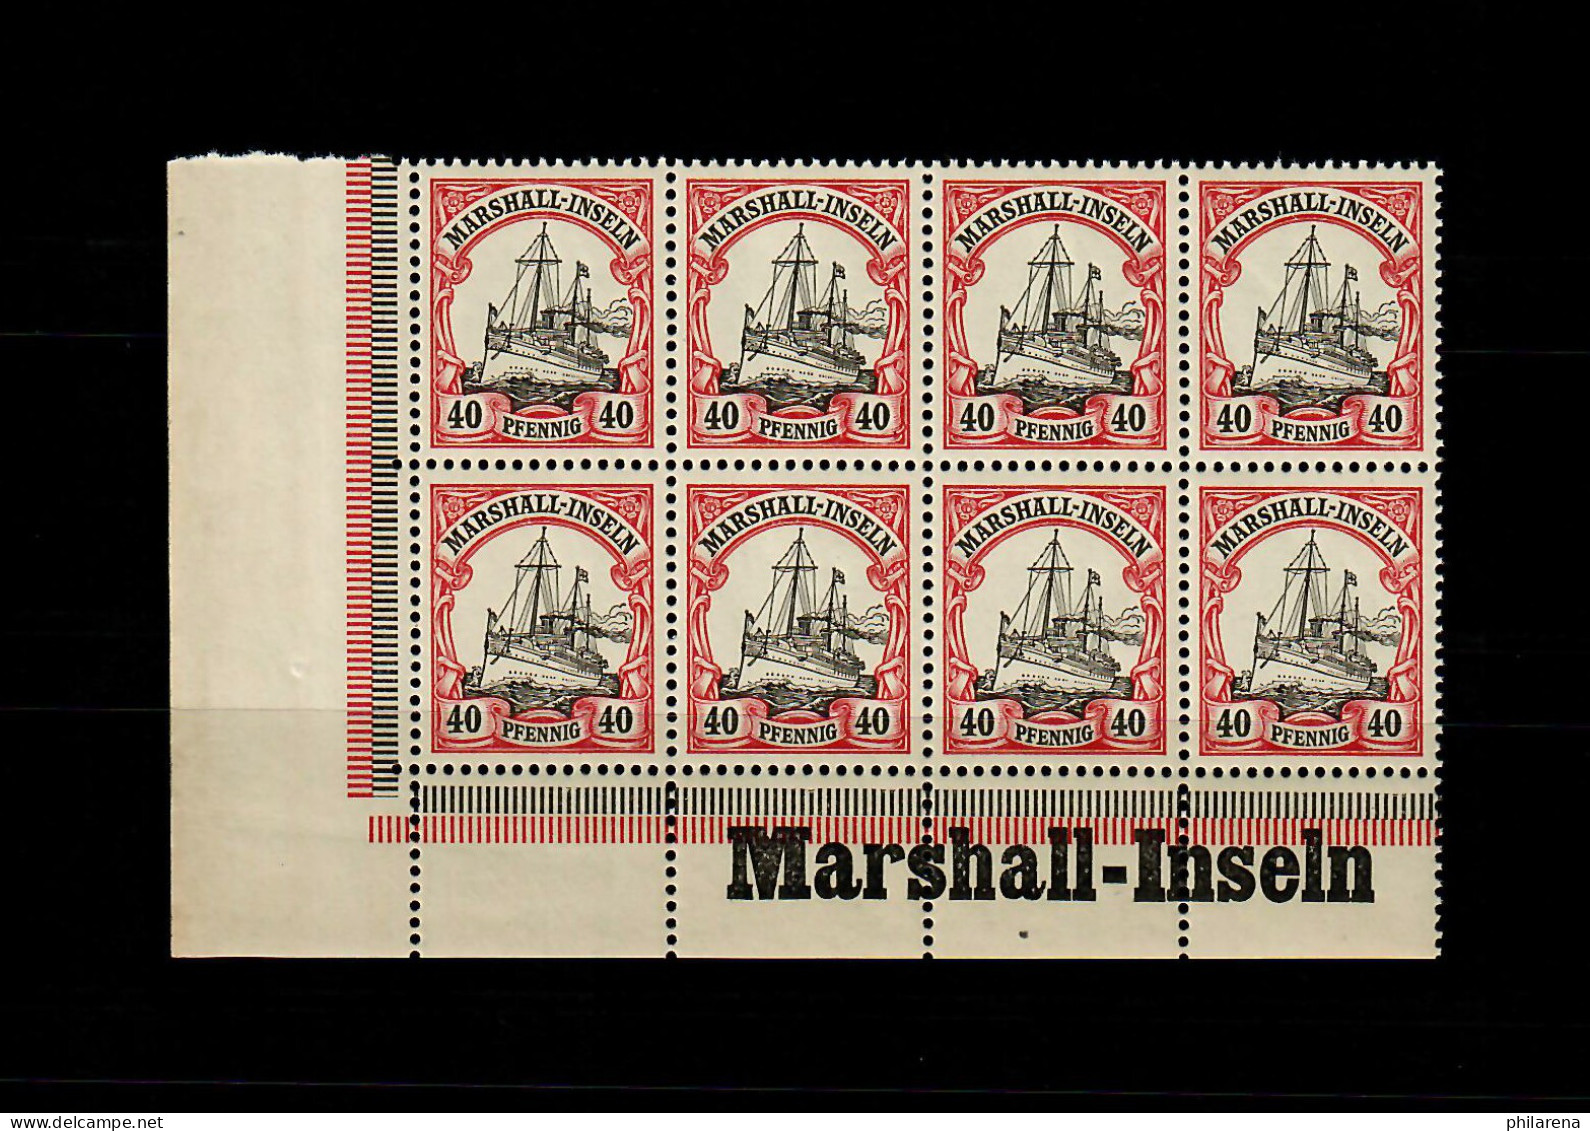 Marschall-Inseln: MiNr. 19, 8er Block Links Inschrift Eckrand, Postfrisch ** - Islas Marshall